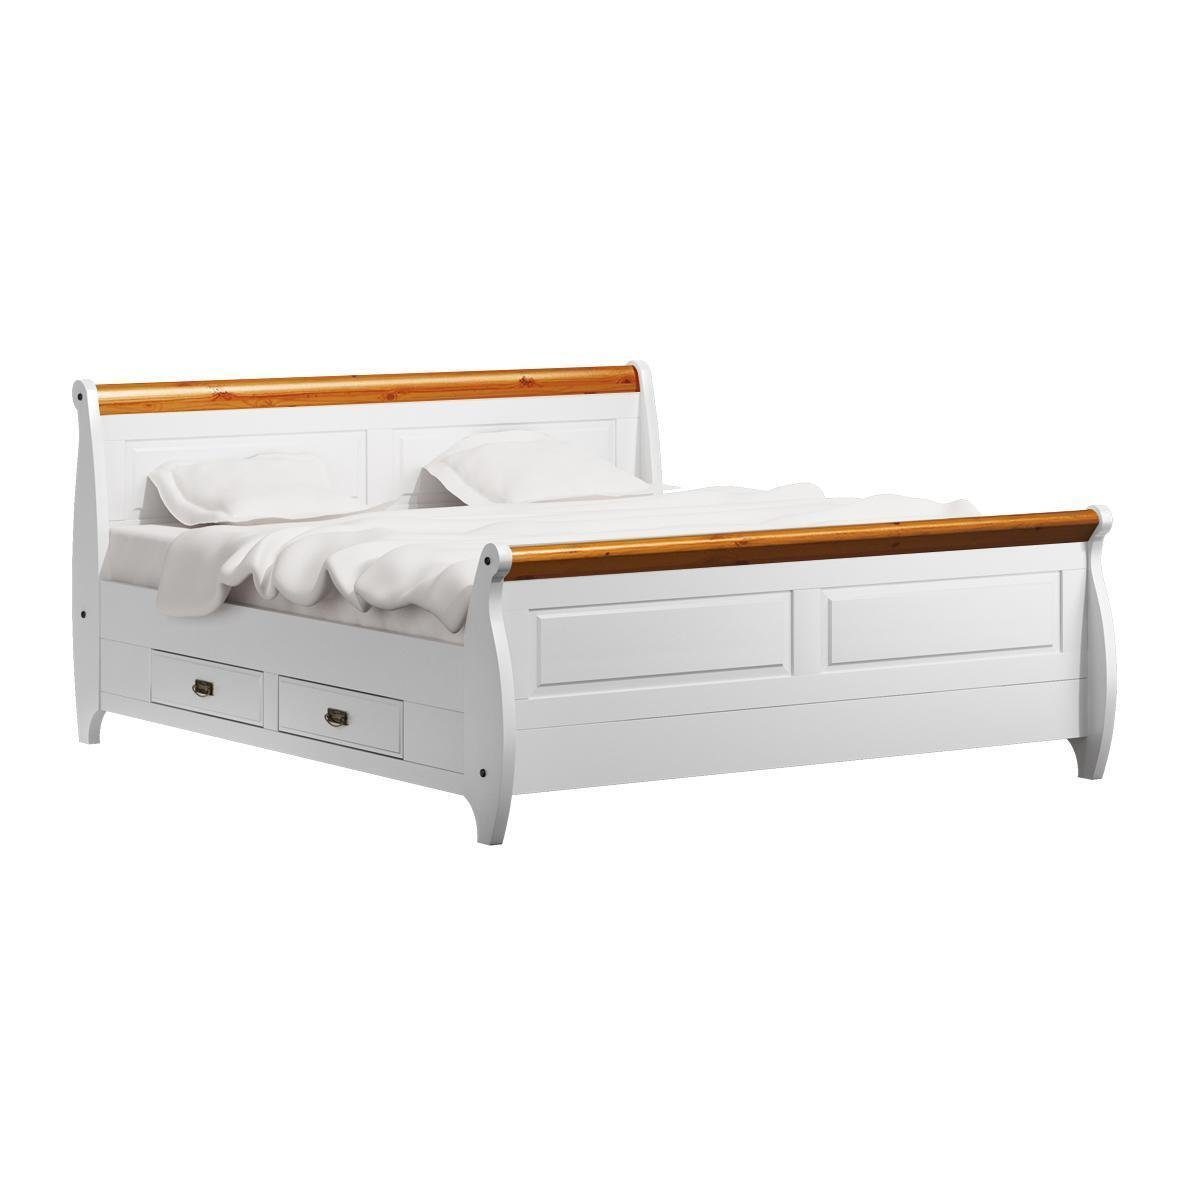 Doppelbett Landhaus Luxus Bauern Doppelbetten Betten JVmoebel Weiß Bett Stil Bett